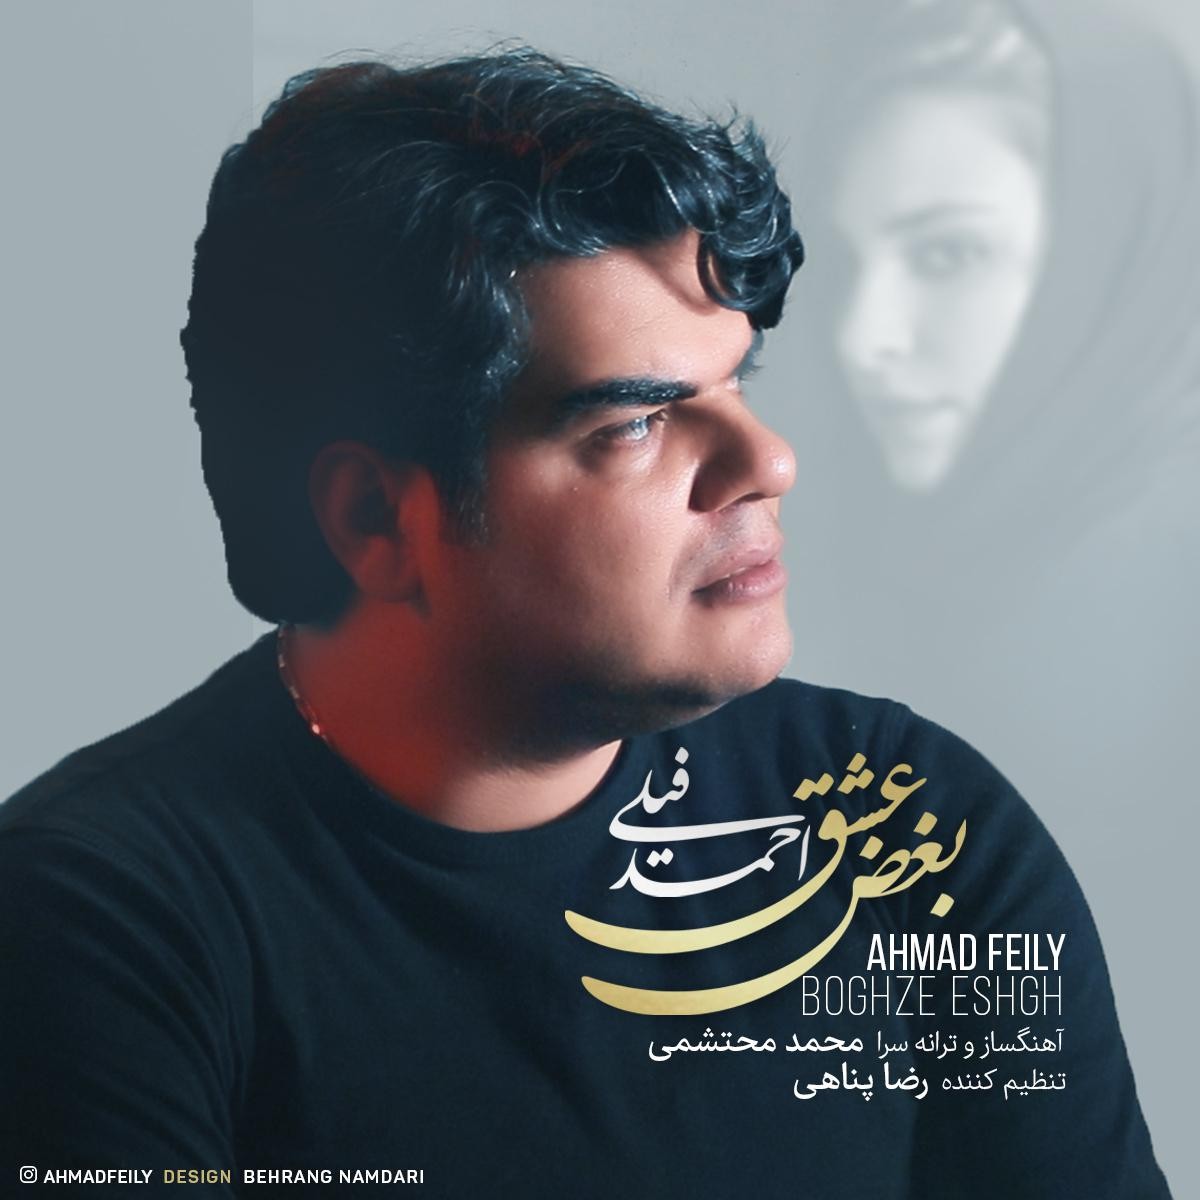  دانلود آهنگ جدید احمد فیلی - بغض عشق | Download New Music By Ahmad Feily - Boghze Eshgh